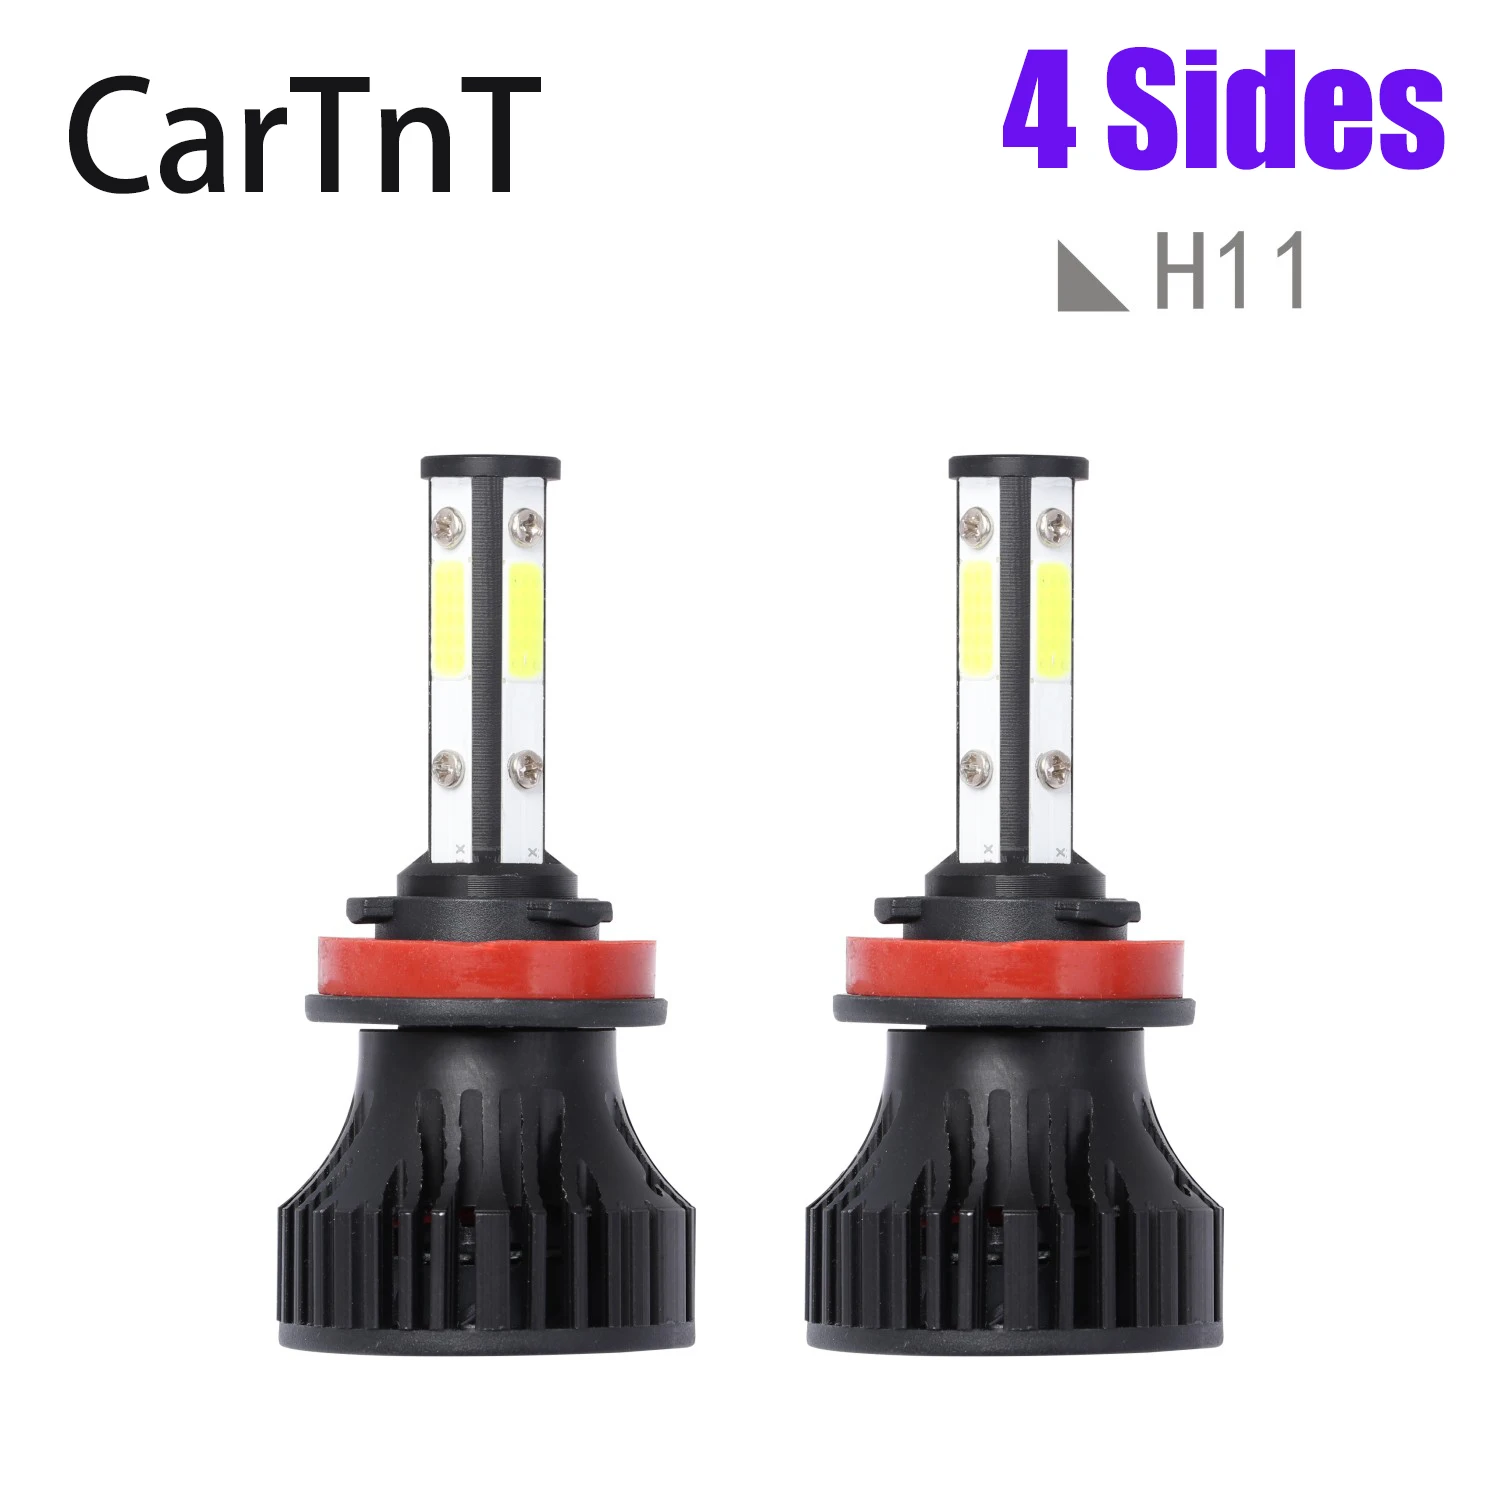 

2PCS LED Car Headlight Bulbs H7 H8 H9 H11 H13 9007 5202 LED 9005 HB3 9006 9004 HB4 9012 Auto Lamps 6500K LED Bulb Headlight